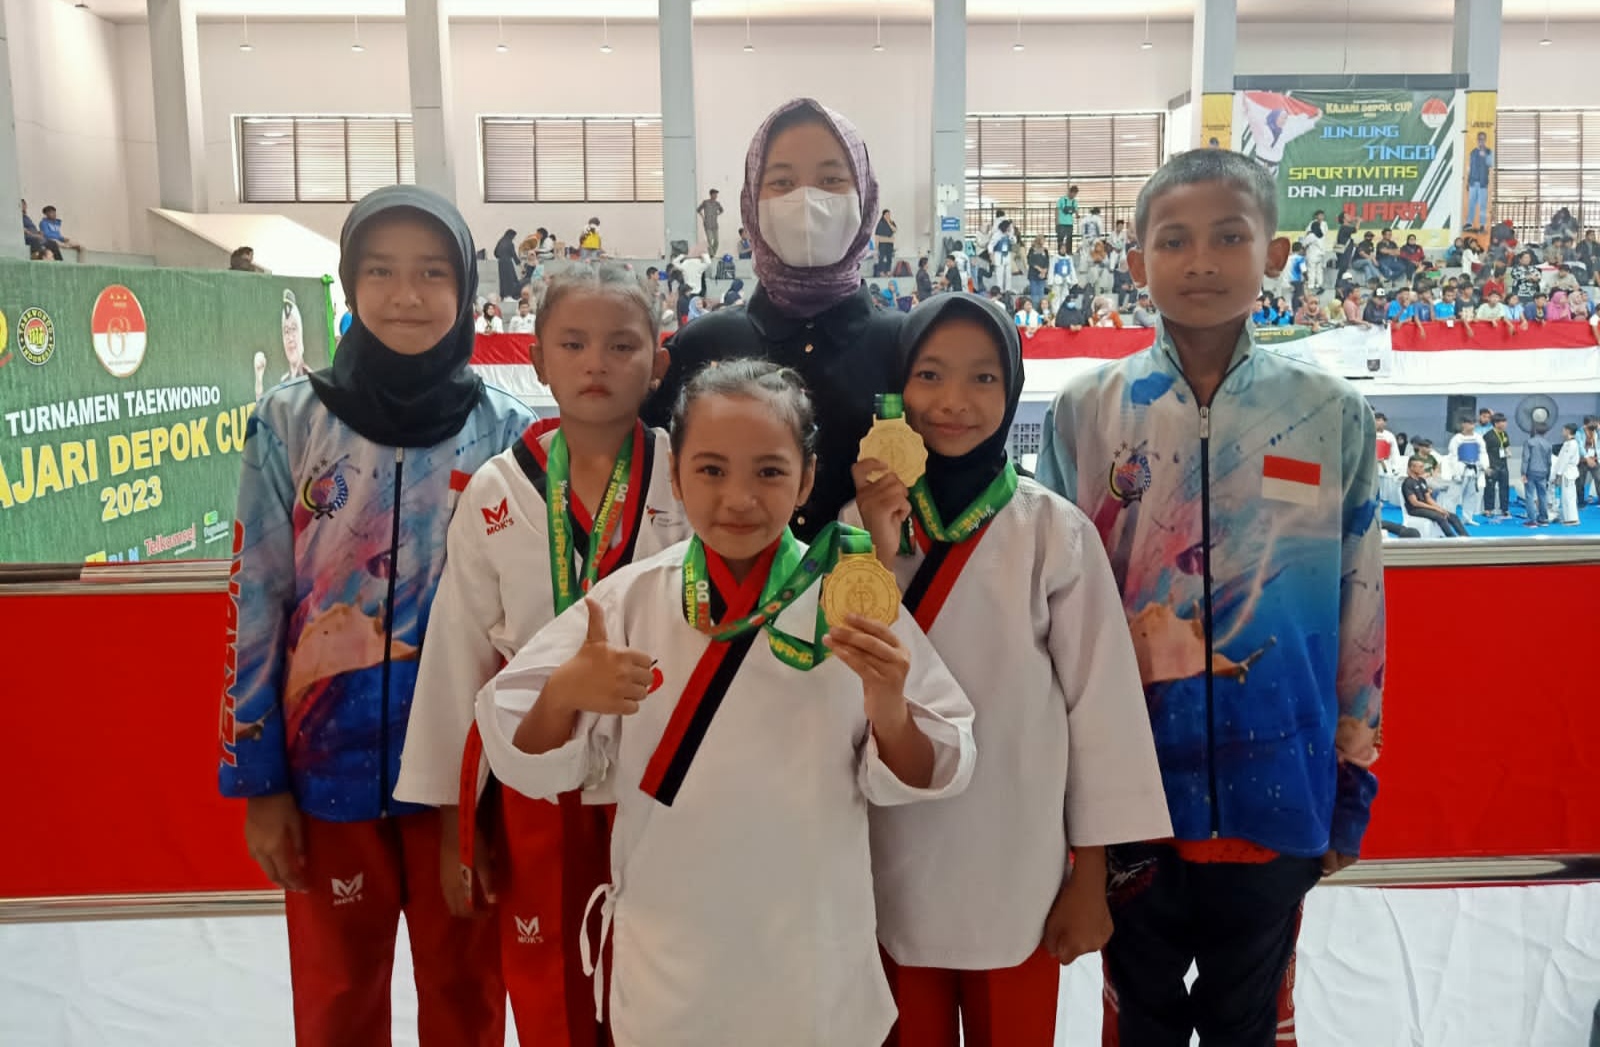 Kembali Rebut Medali Emas, R.A Adheeva Afsheen Alchori Bersinar di Turnamen Taekwondo Kajari Depok Cup